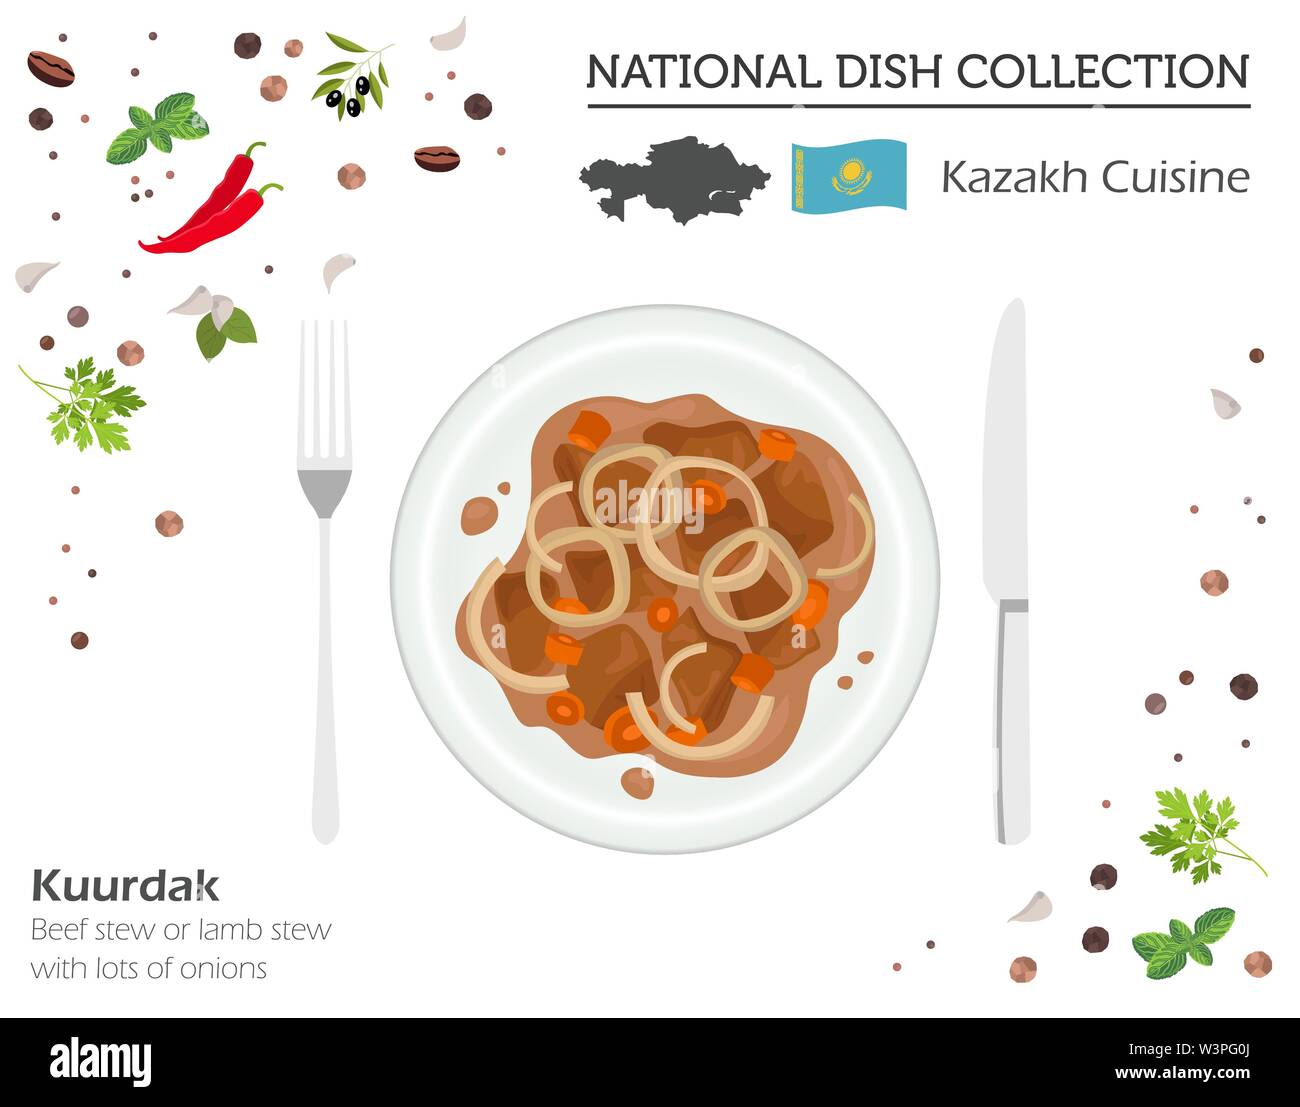 Kasachische Küche. Asiatische Nationalgericht Sammlung. Kuurdak isoliert auf Weiss, infograpic. Vector Illustration Stock Vektor